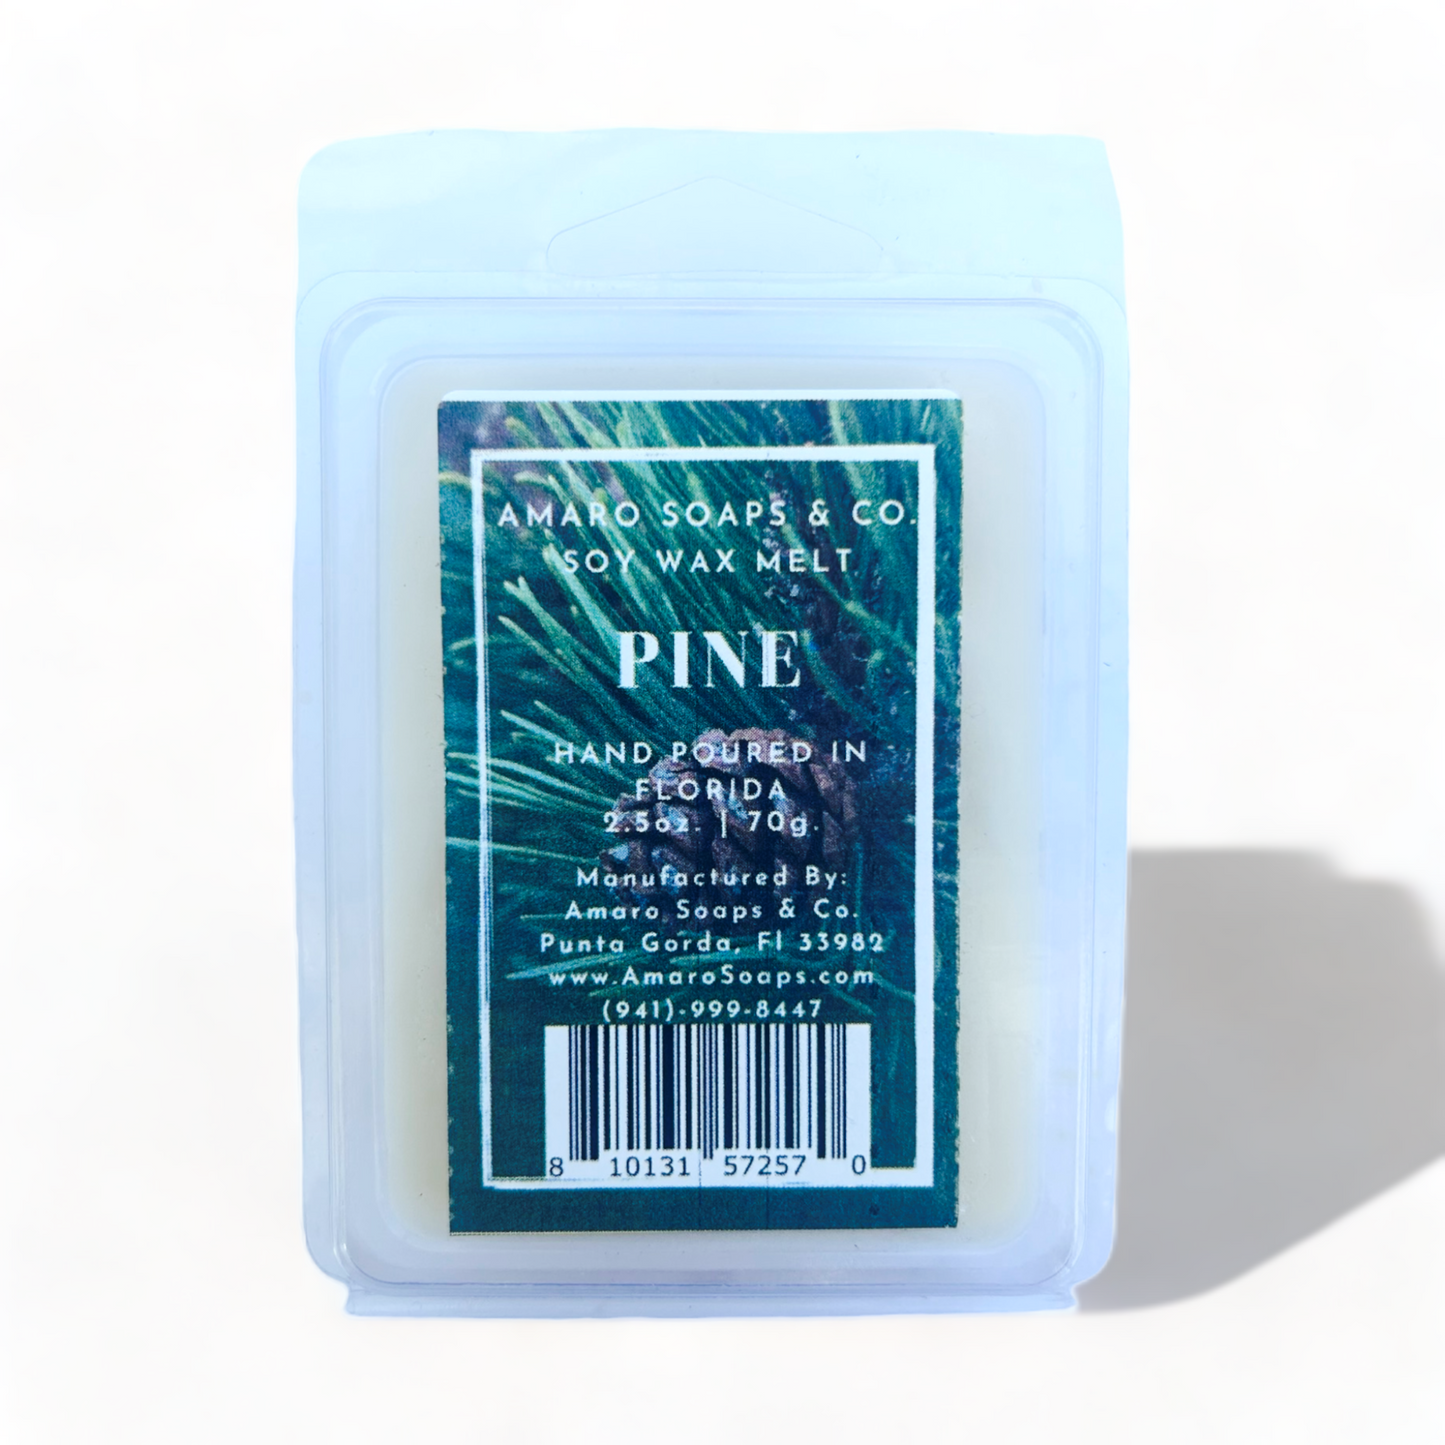 Pine Soy Wax Melt